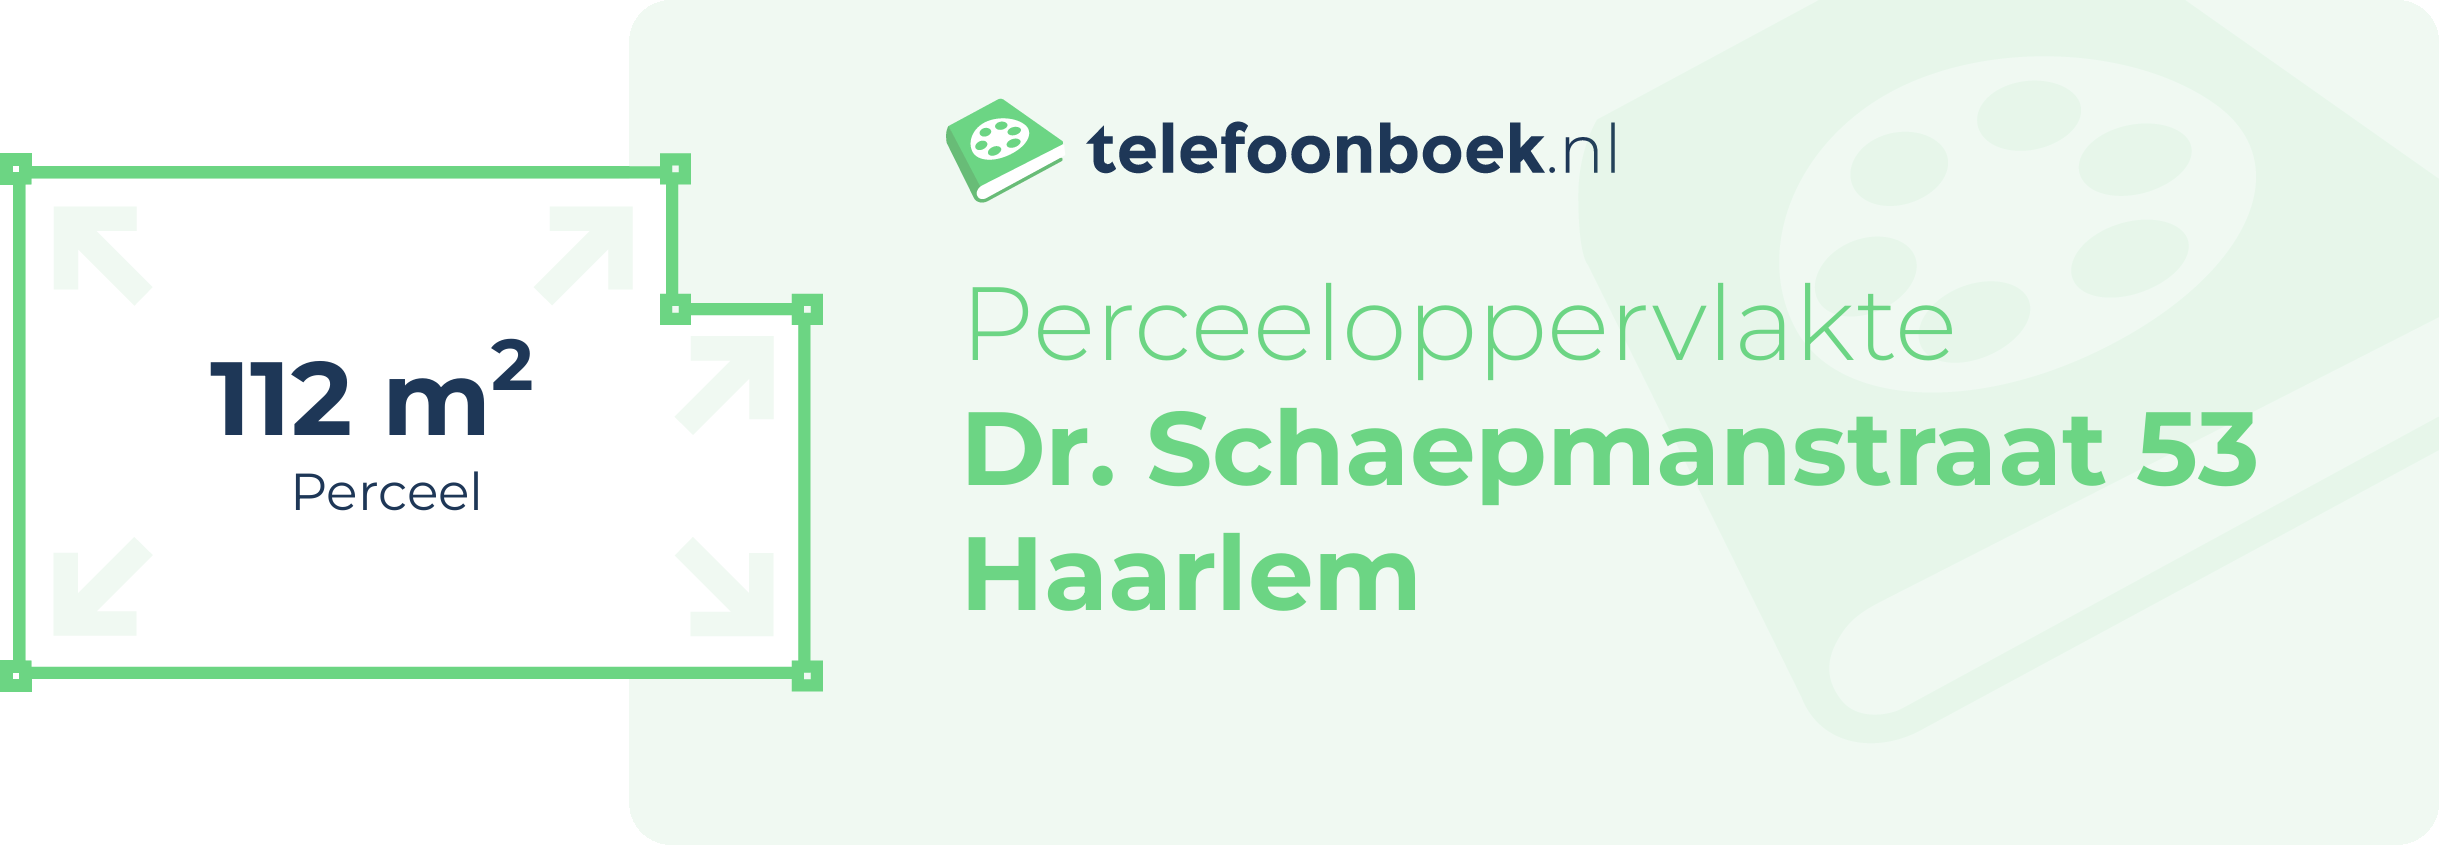 Perceeloppervlakte Dr. Schaepmanstraat 53 Haarlem